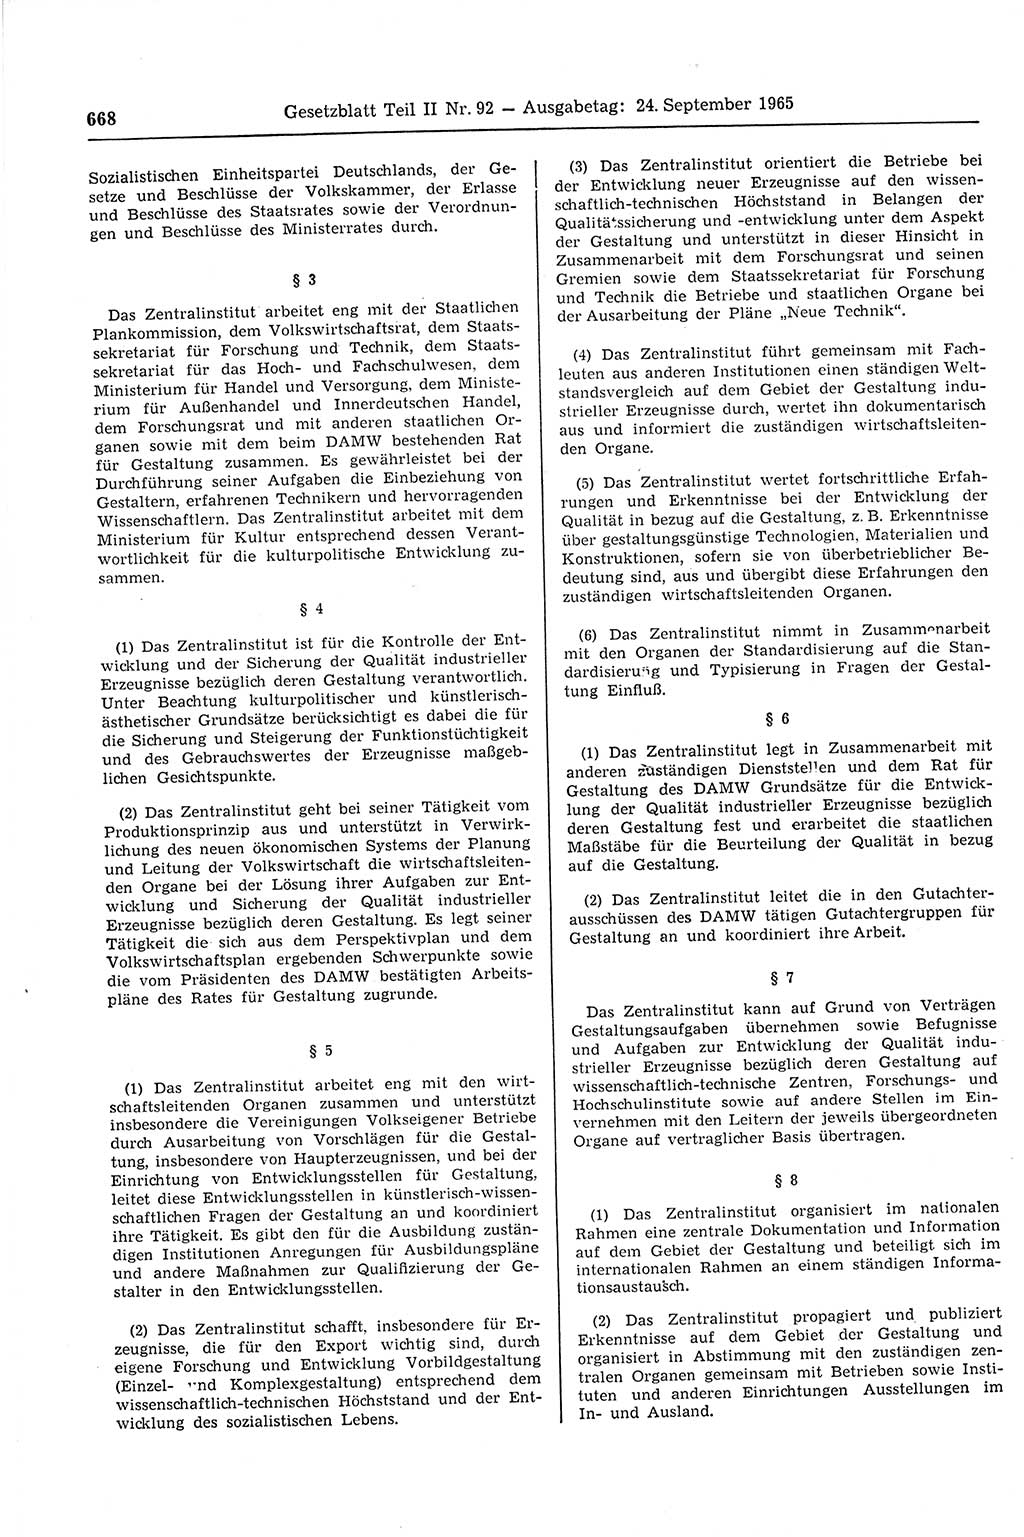 Gesetzblatt (GBl.) der Deutschen Demokratischen Republik (DDR) Teil ⅠⅠ 1965, Seite 668 (GBl. DDR ⅠⅠ 1965, S. 668)